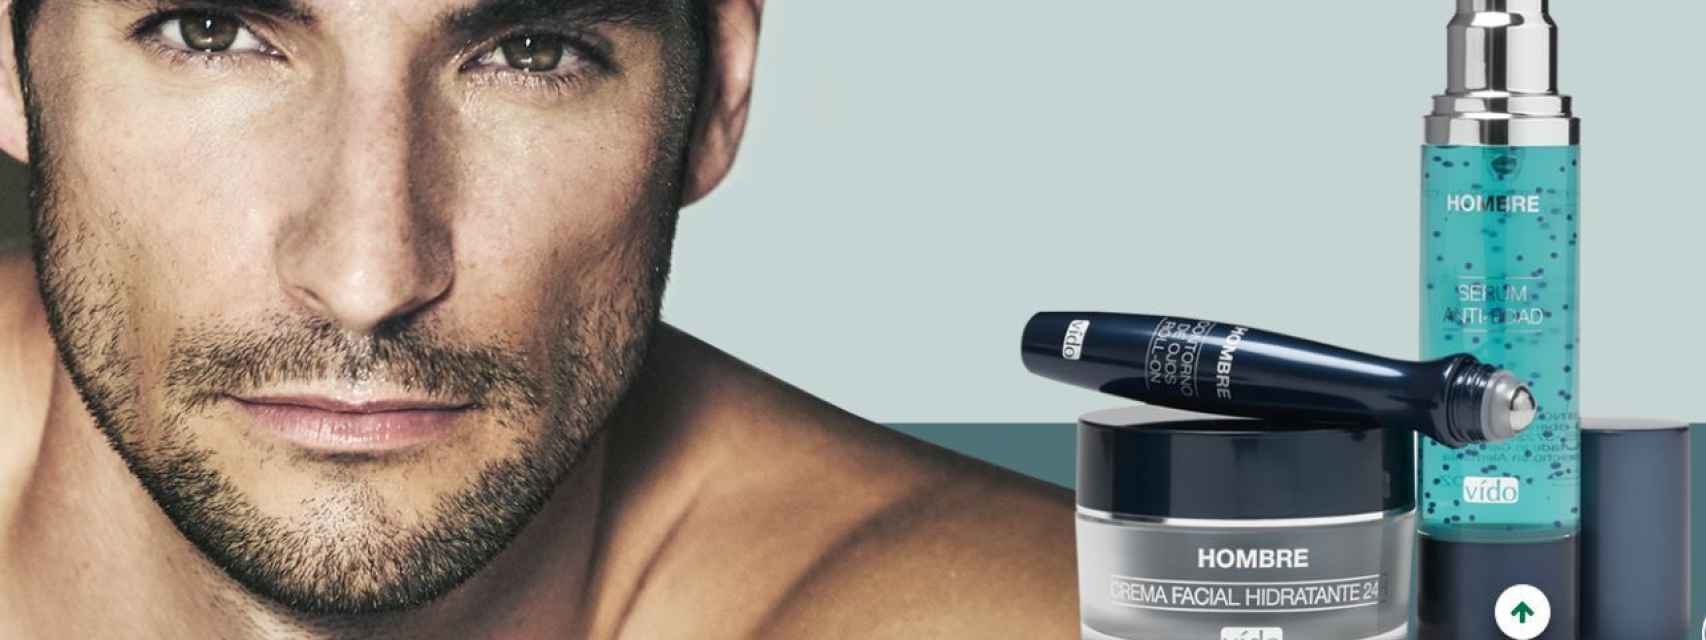 Los tres productos para el cuidado de la piel de los hombres rondan los 16 euros.